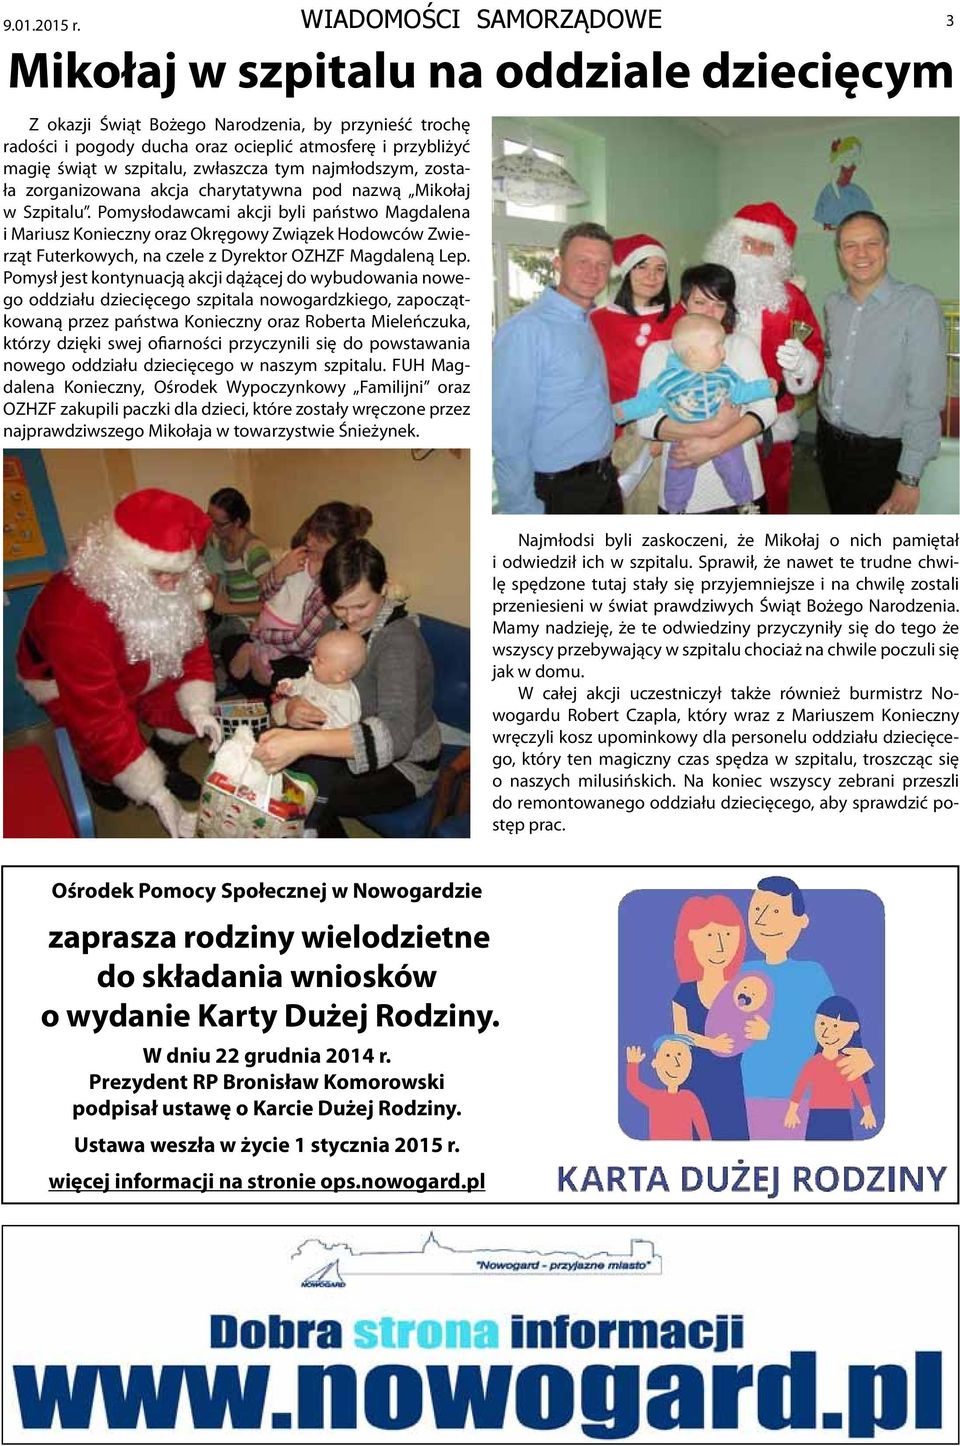 szpitalu, zwłaszcza tym najmłodszym, została zorganizowana akcja charytatywna pod nazwą Mikołaj w Szpitalu.